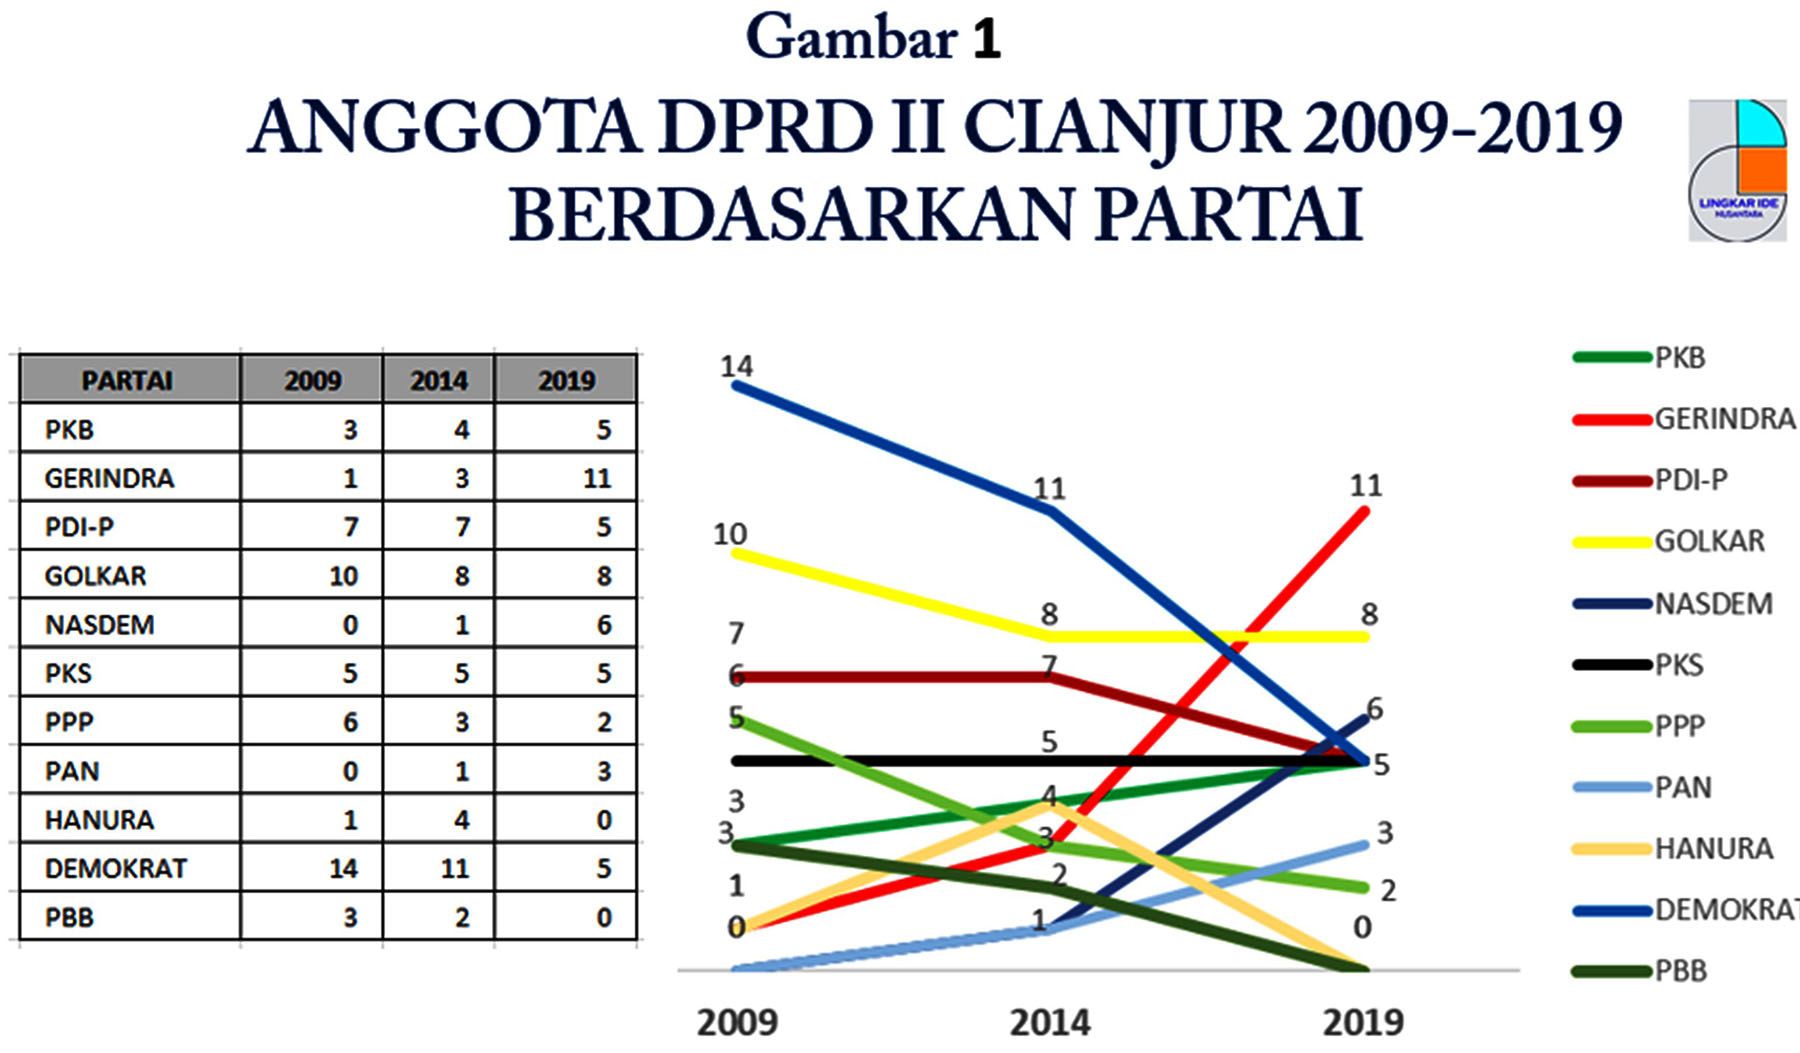 Naik-turun suara dan kursi partai di DPRD Cianjur 2009-2019